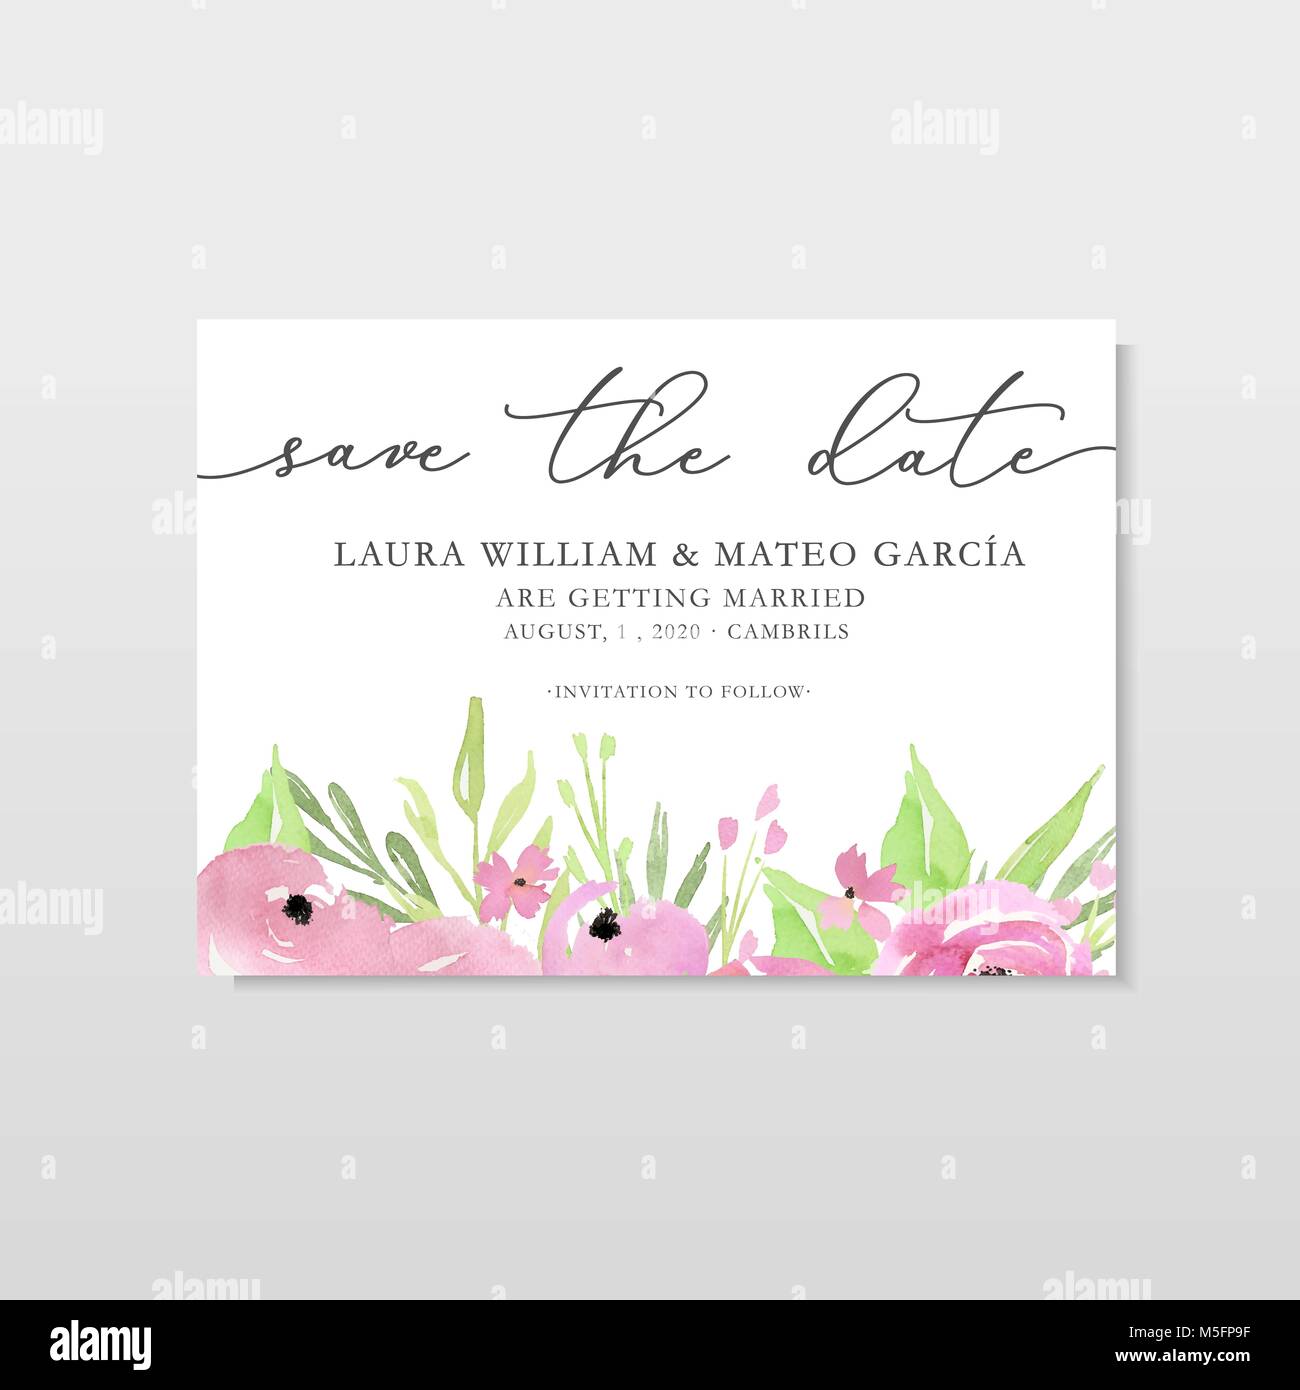 Save the date modèle avec aquarelle fleurs roses et feuilles, modèle de carte avec des fleurs à la main, illustration, mariage. Illustration de Vecteur